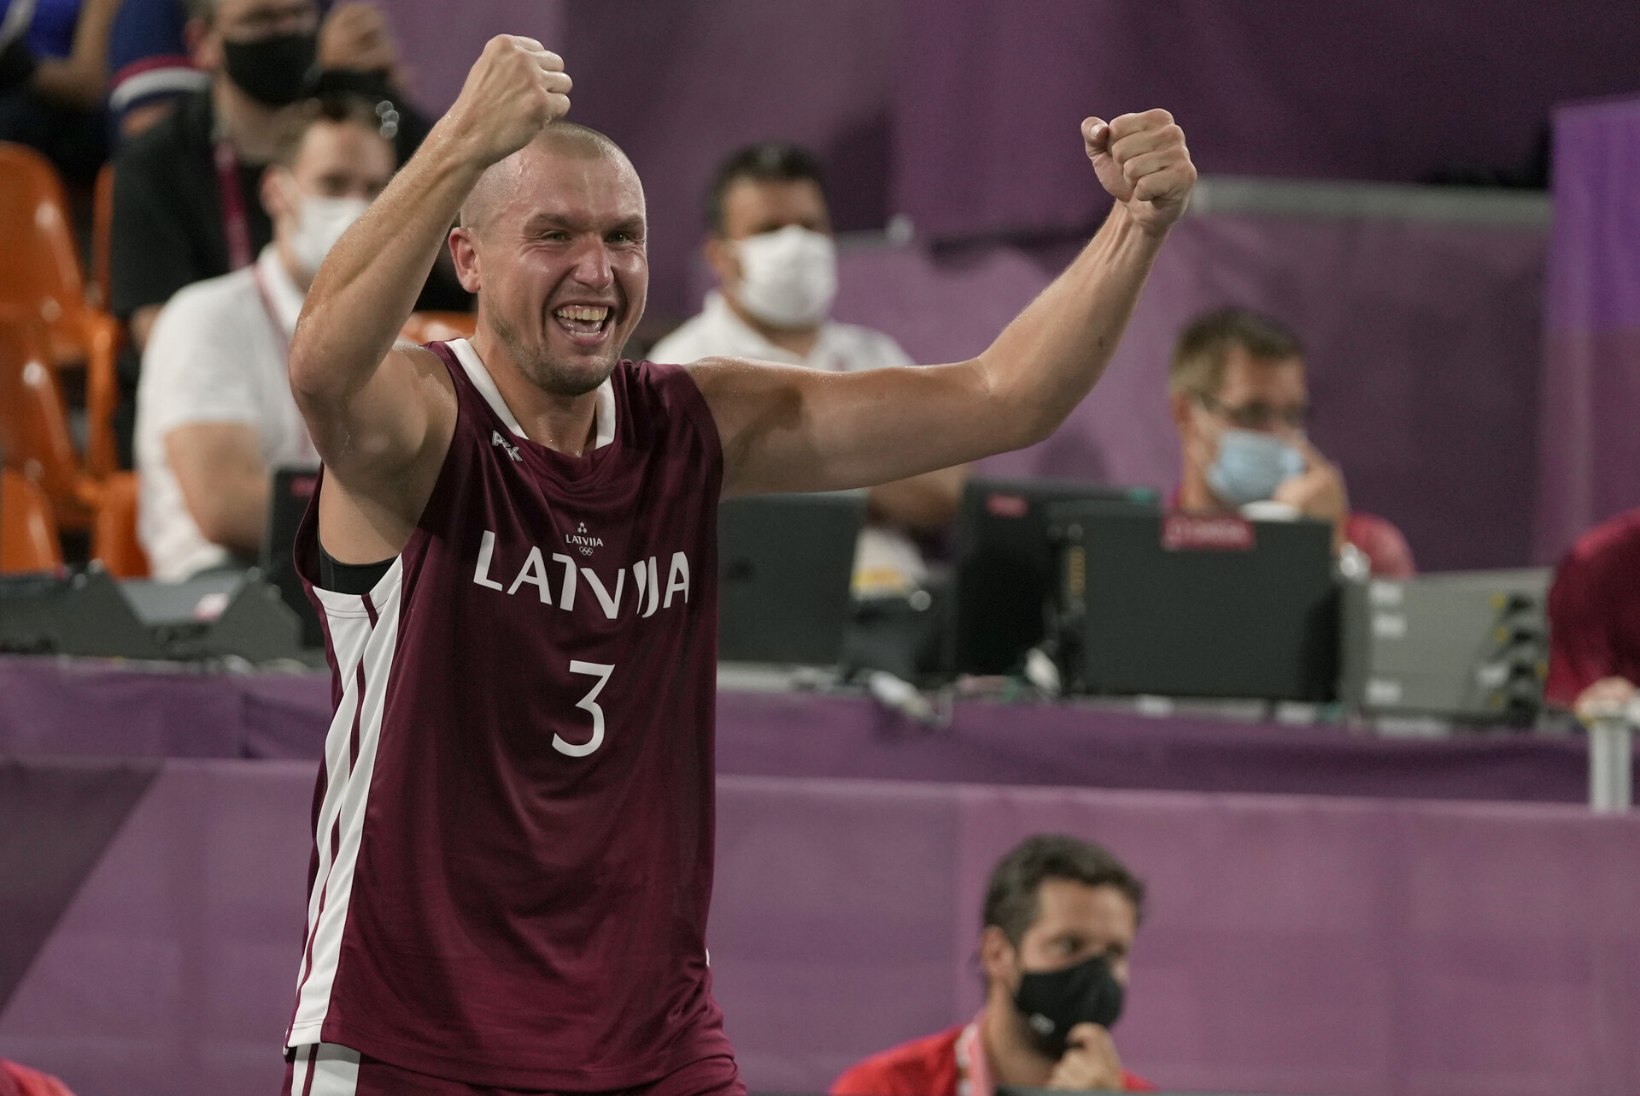 ÕL TOKYOS | VÕIMAS! AJALOOLINE! Lätiga võitis olümpiakulla Valgas karjäärile joone alla tõmmanud mees!